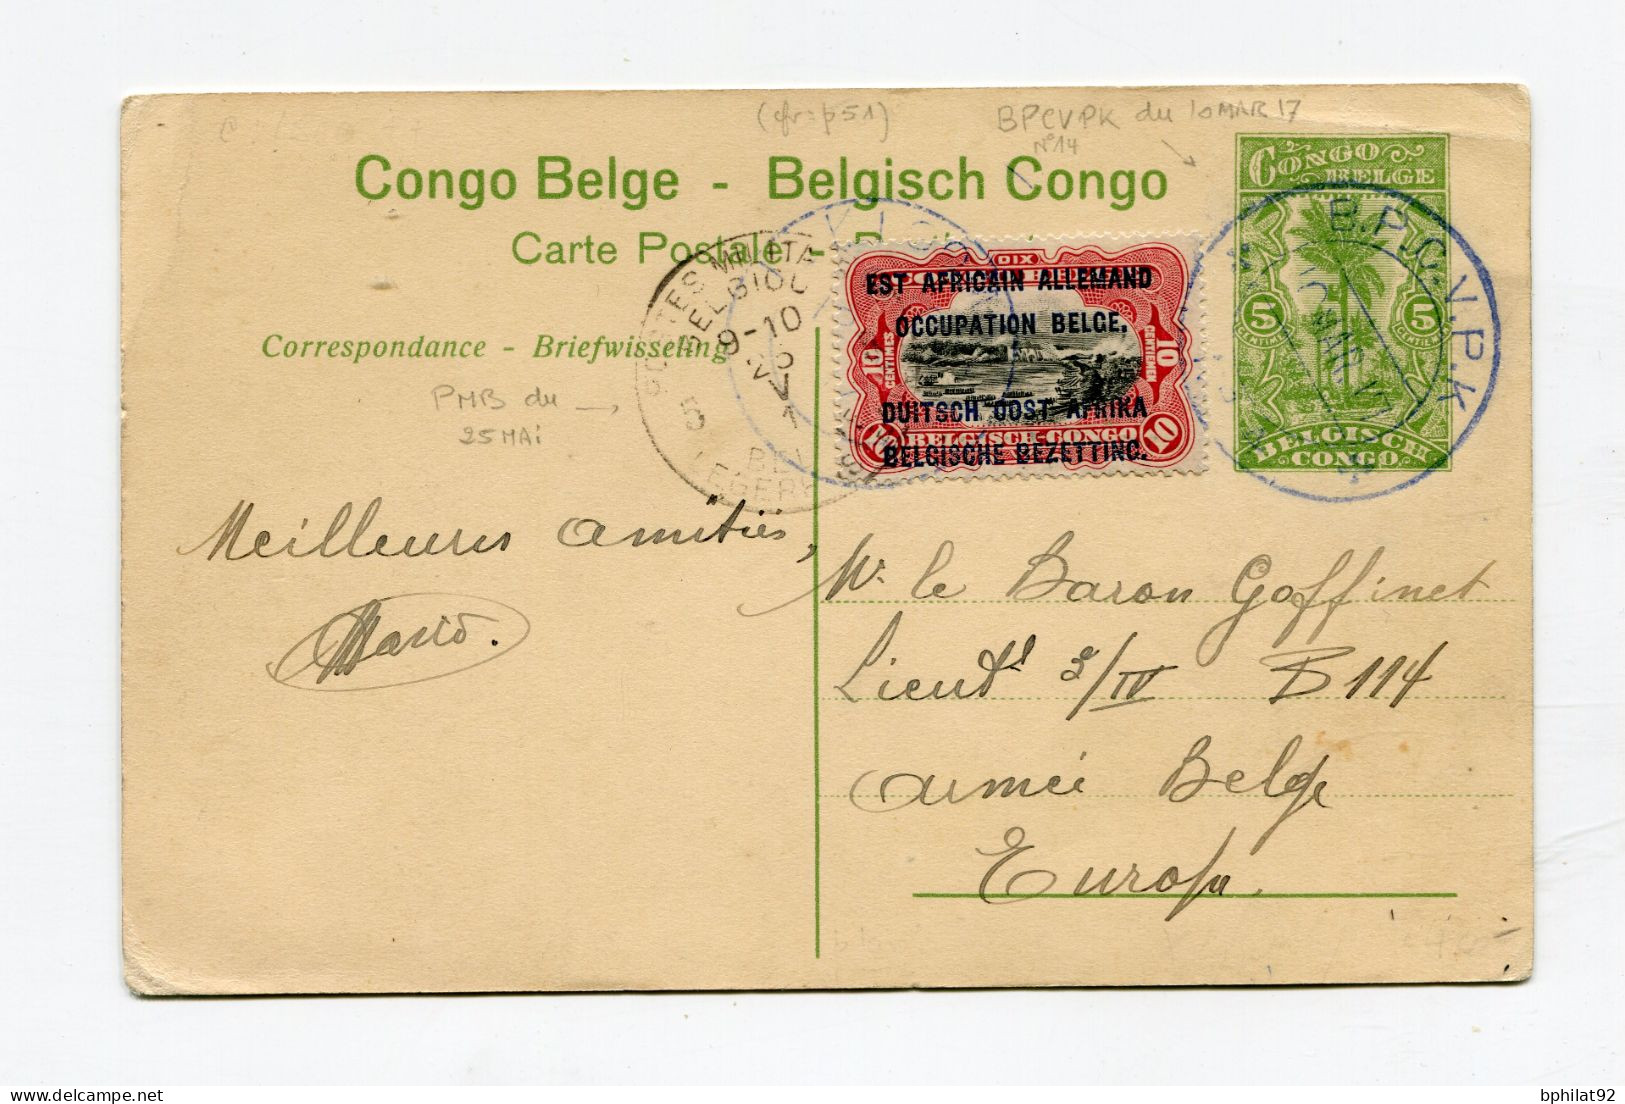 !!! ENTIER POSTAL DU CONGO BELGE, CACHET BPCVPK DE 1917 - Covers & Documents